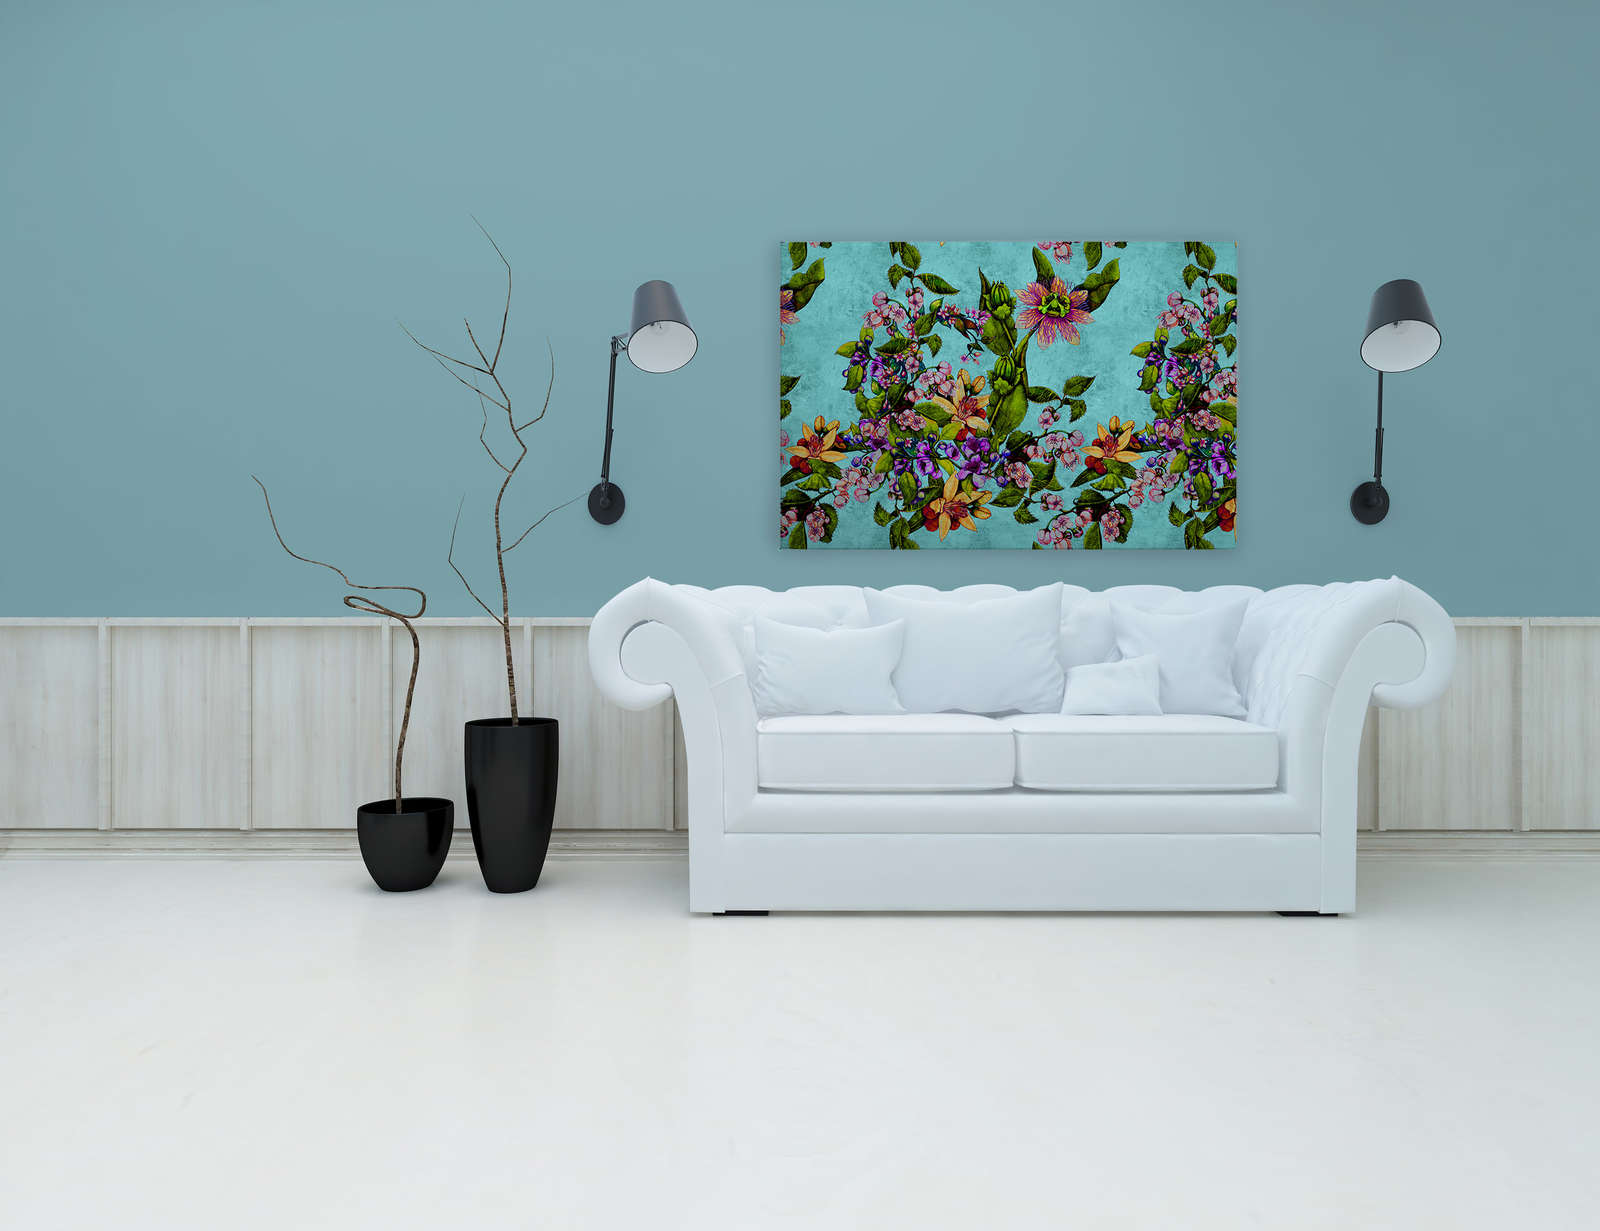             Tropical Passion 1 - Toile tropicale avec motif de fleurs - 1,20 m x 0,80 m
        